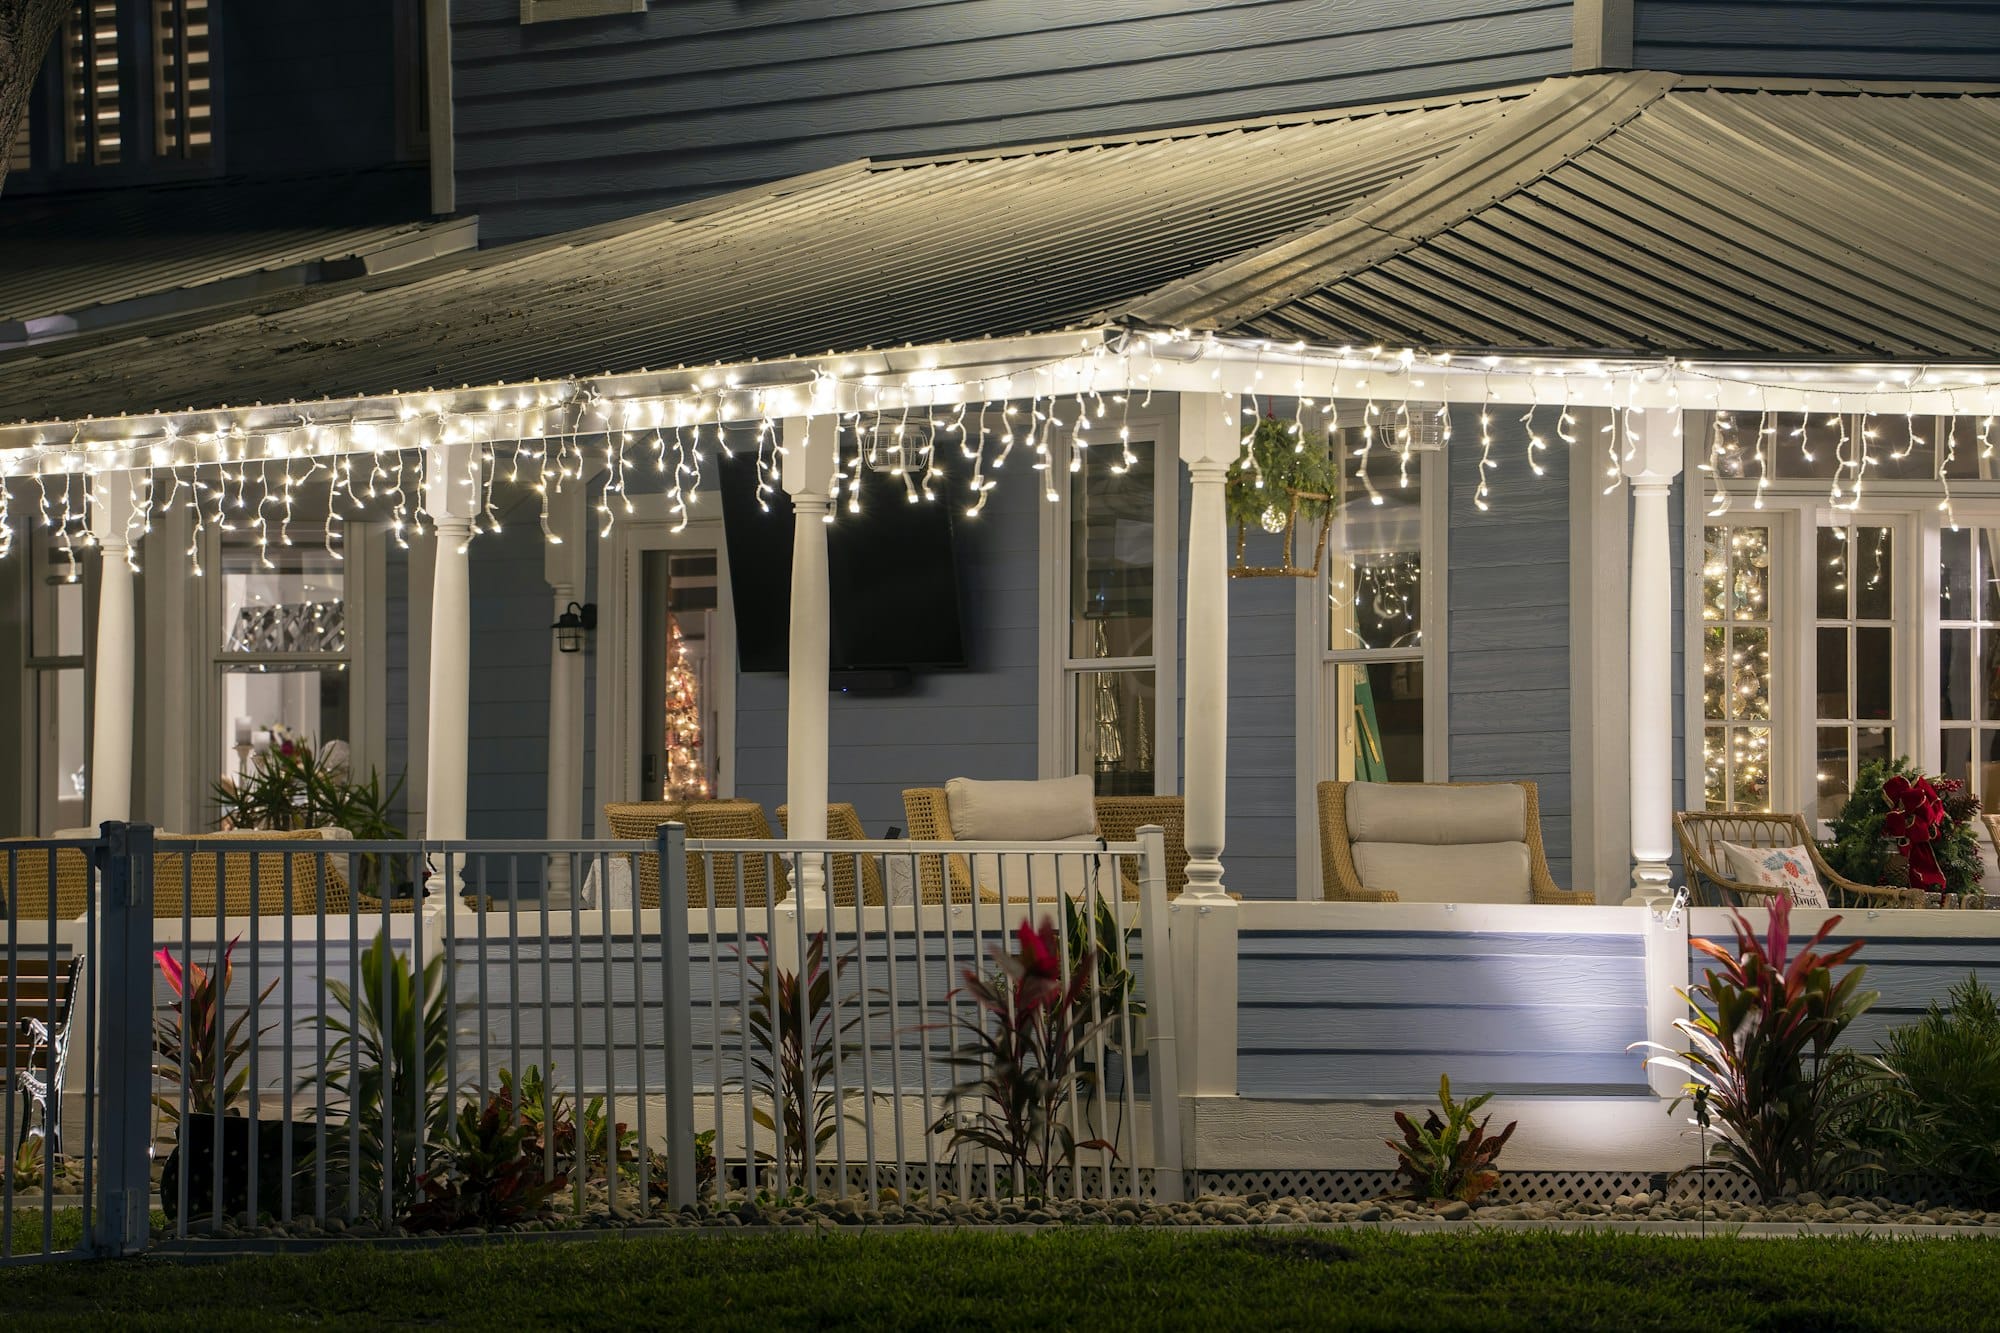 Patio delantero de la casa con gran porche iluminado con adornos navideños.